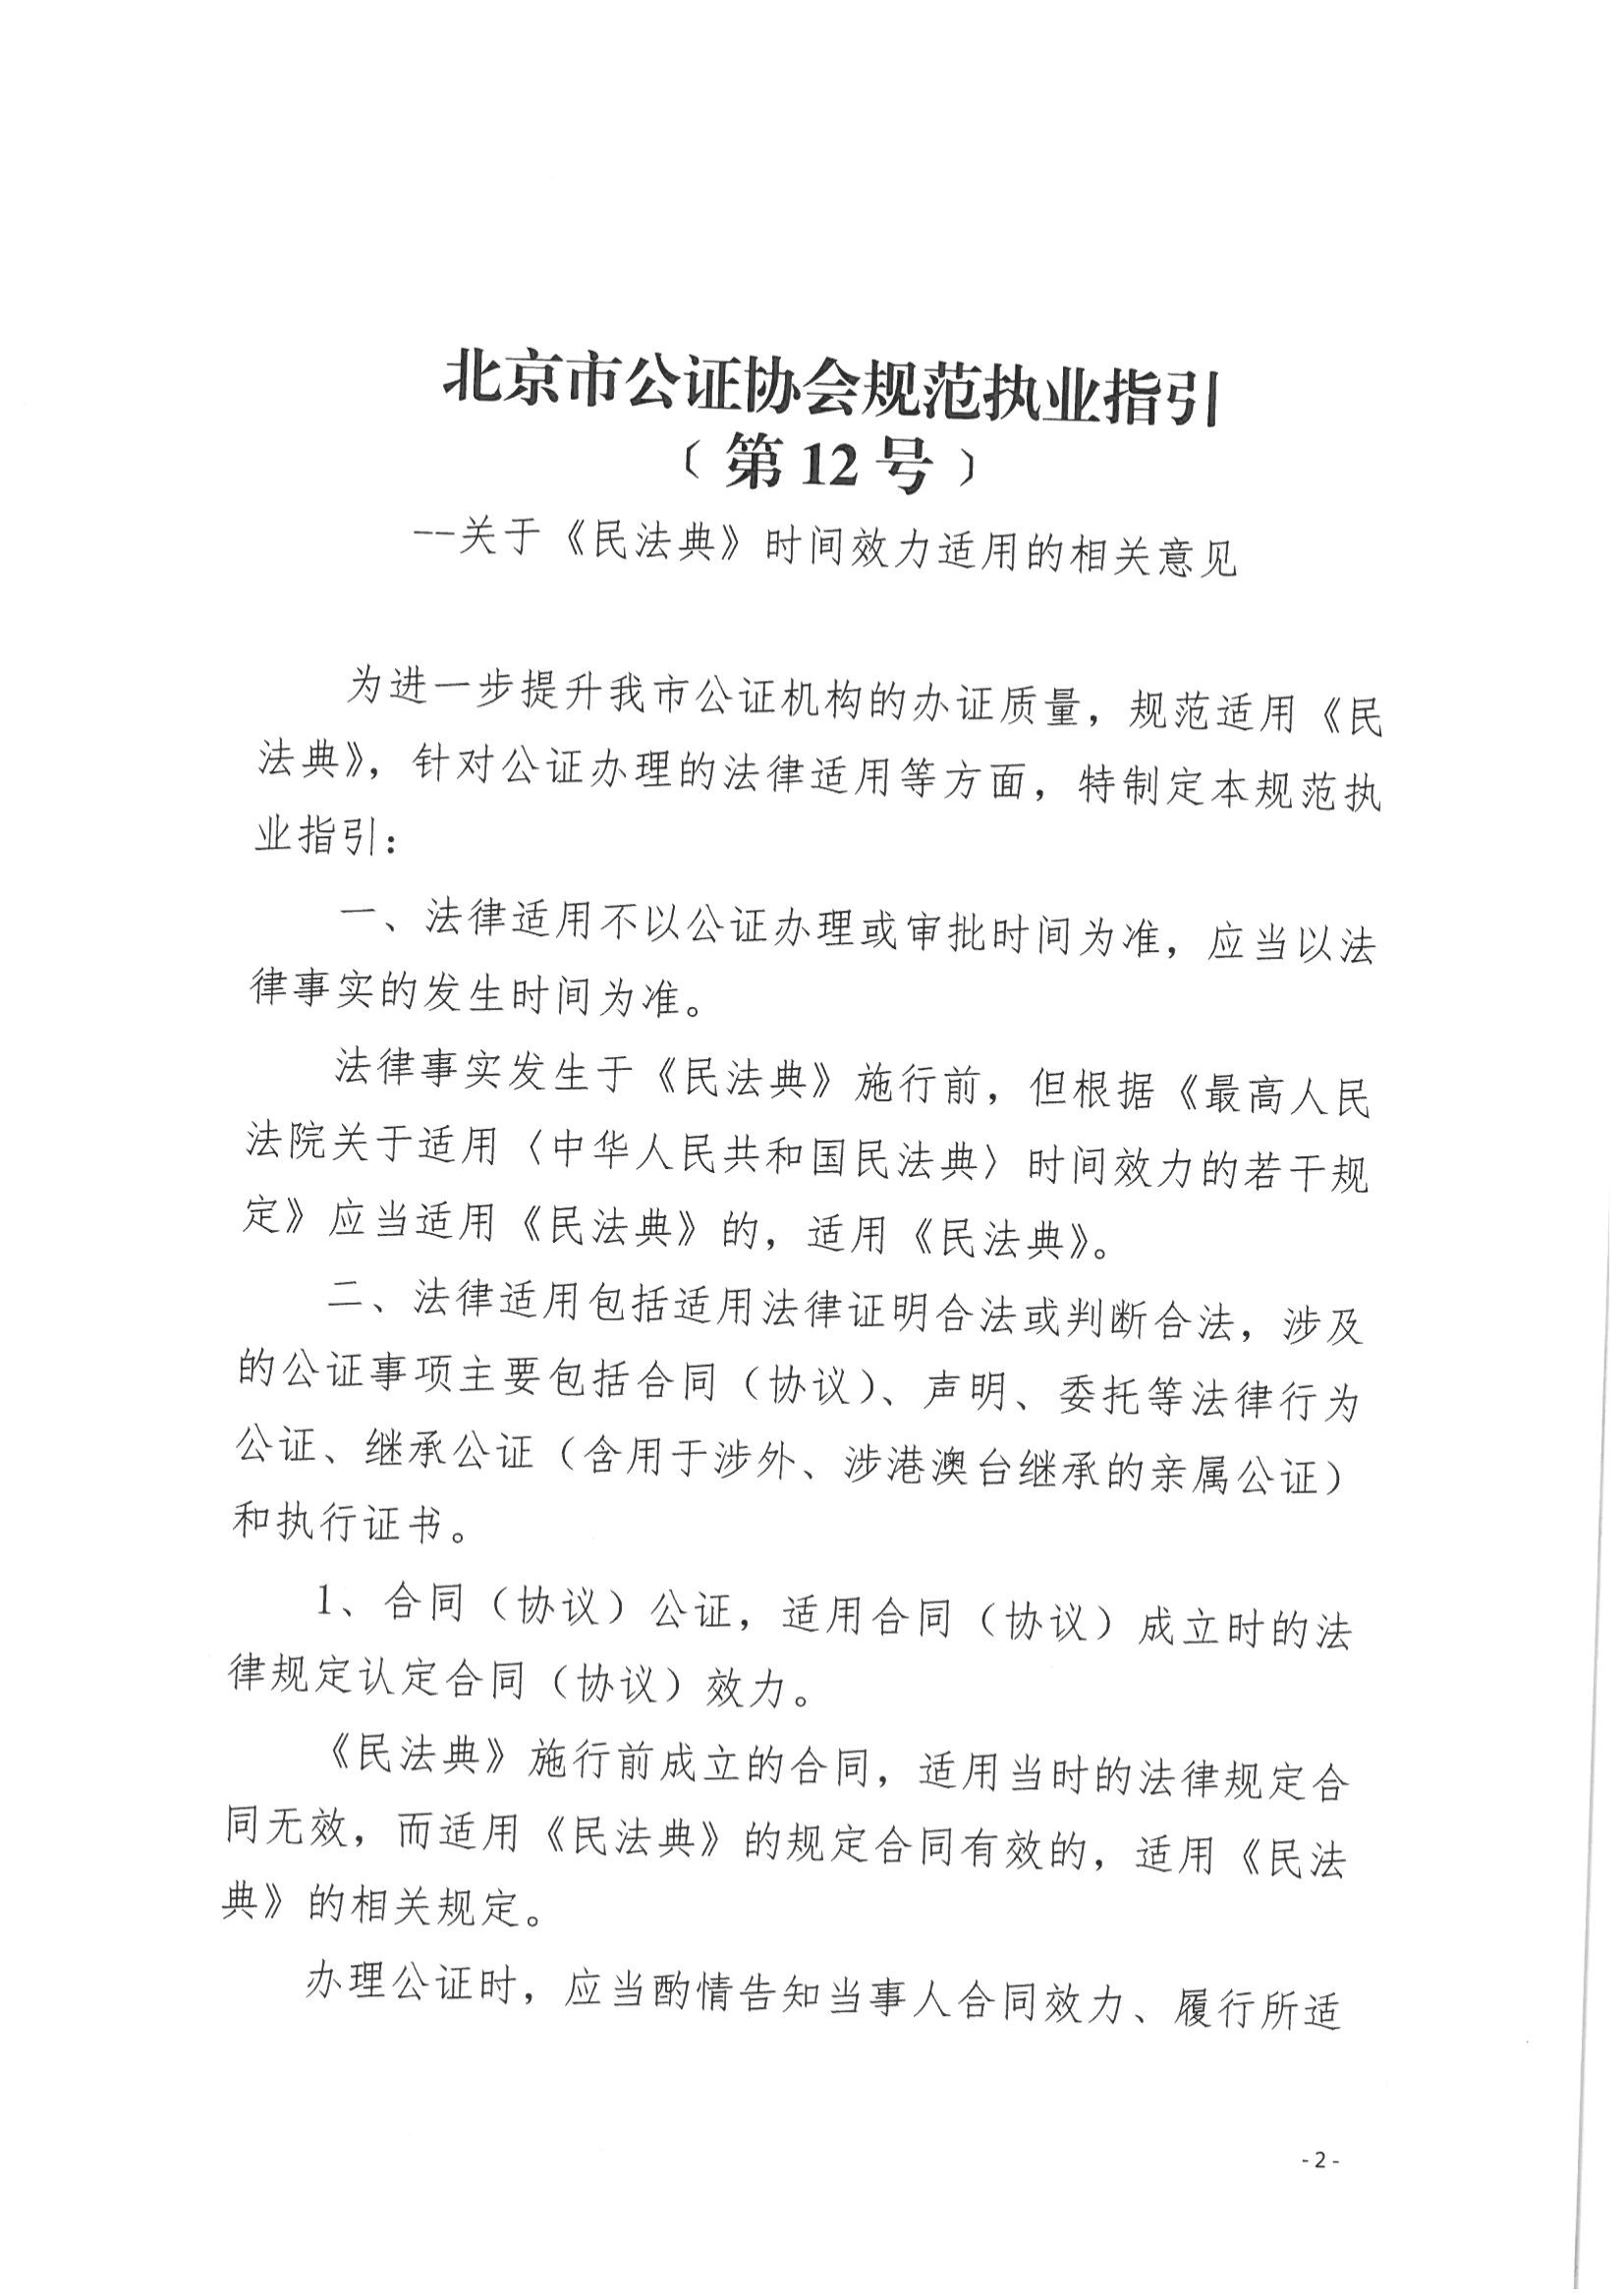 京公协字【2021】14号 《北京市公证协会规范执业指引【第12号】》_02